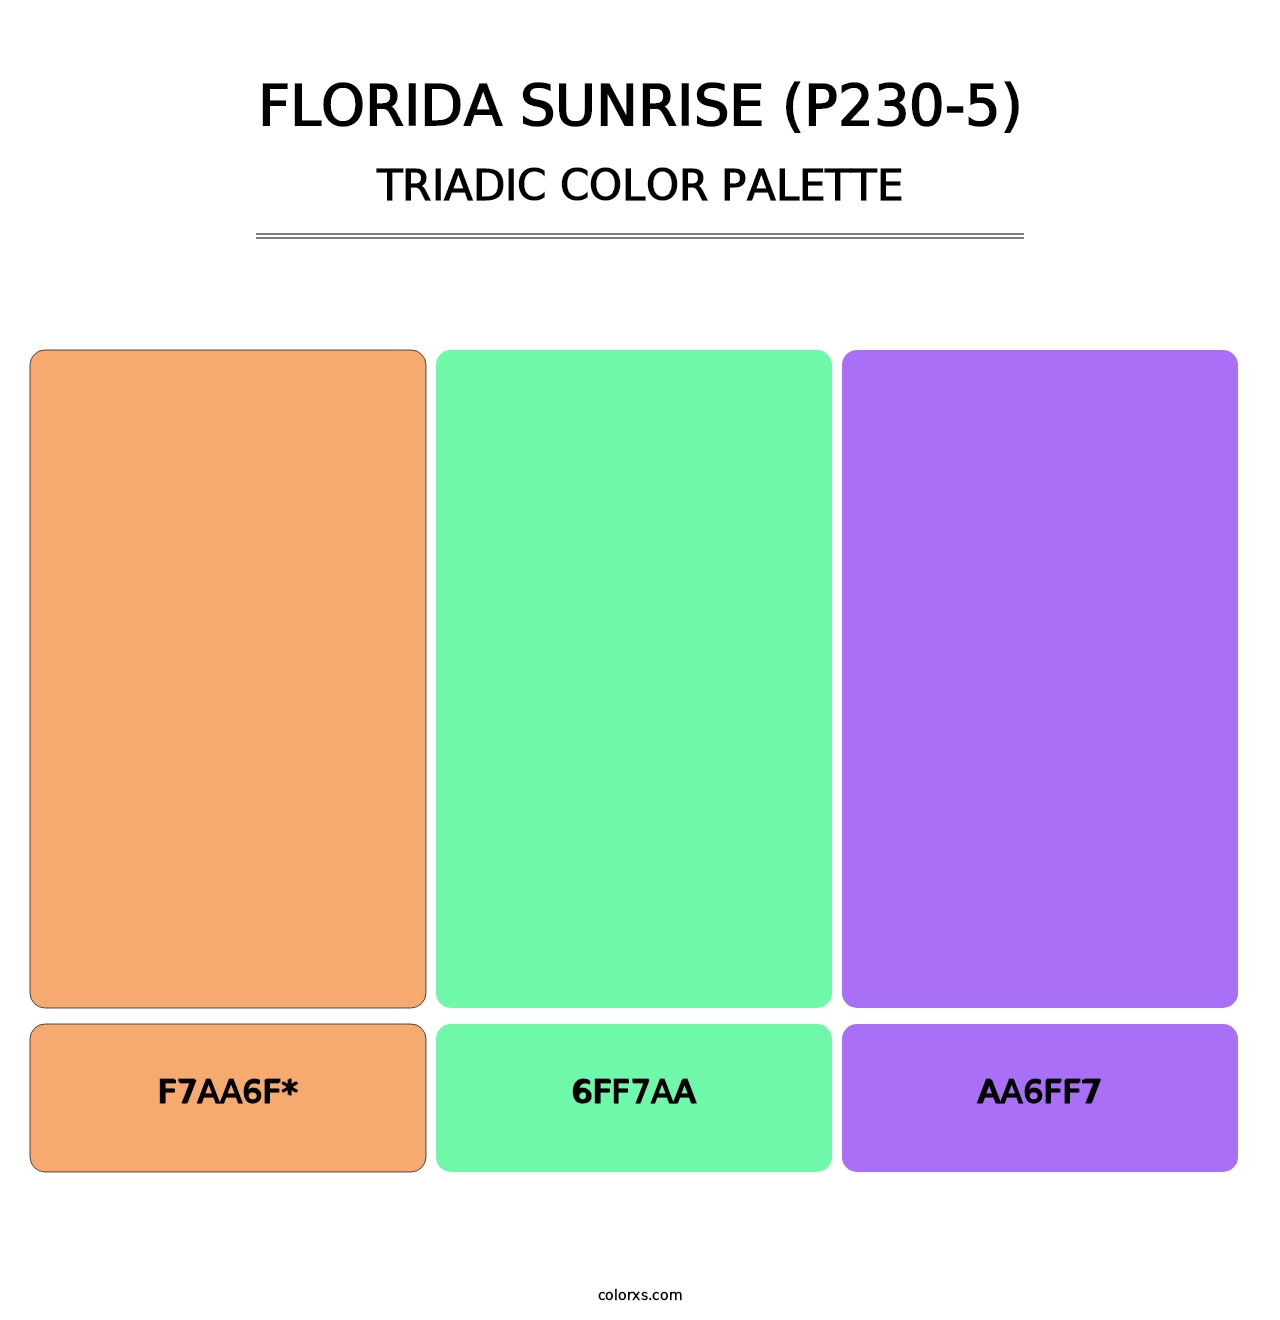 Florida Sunrise (P230-5) - Triadic Color Palette